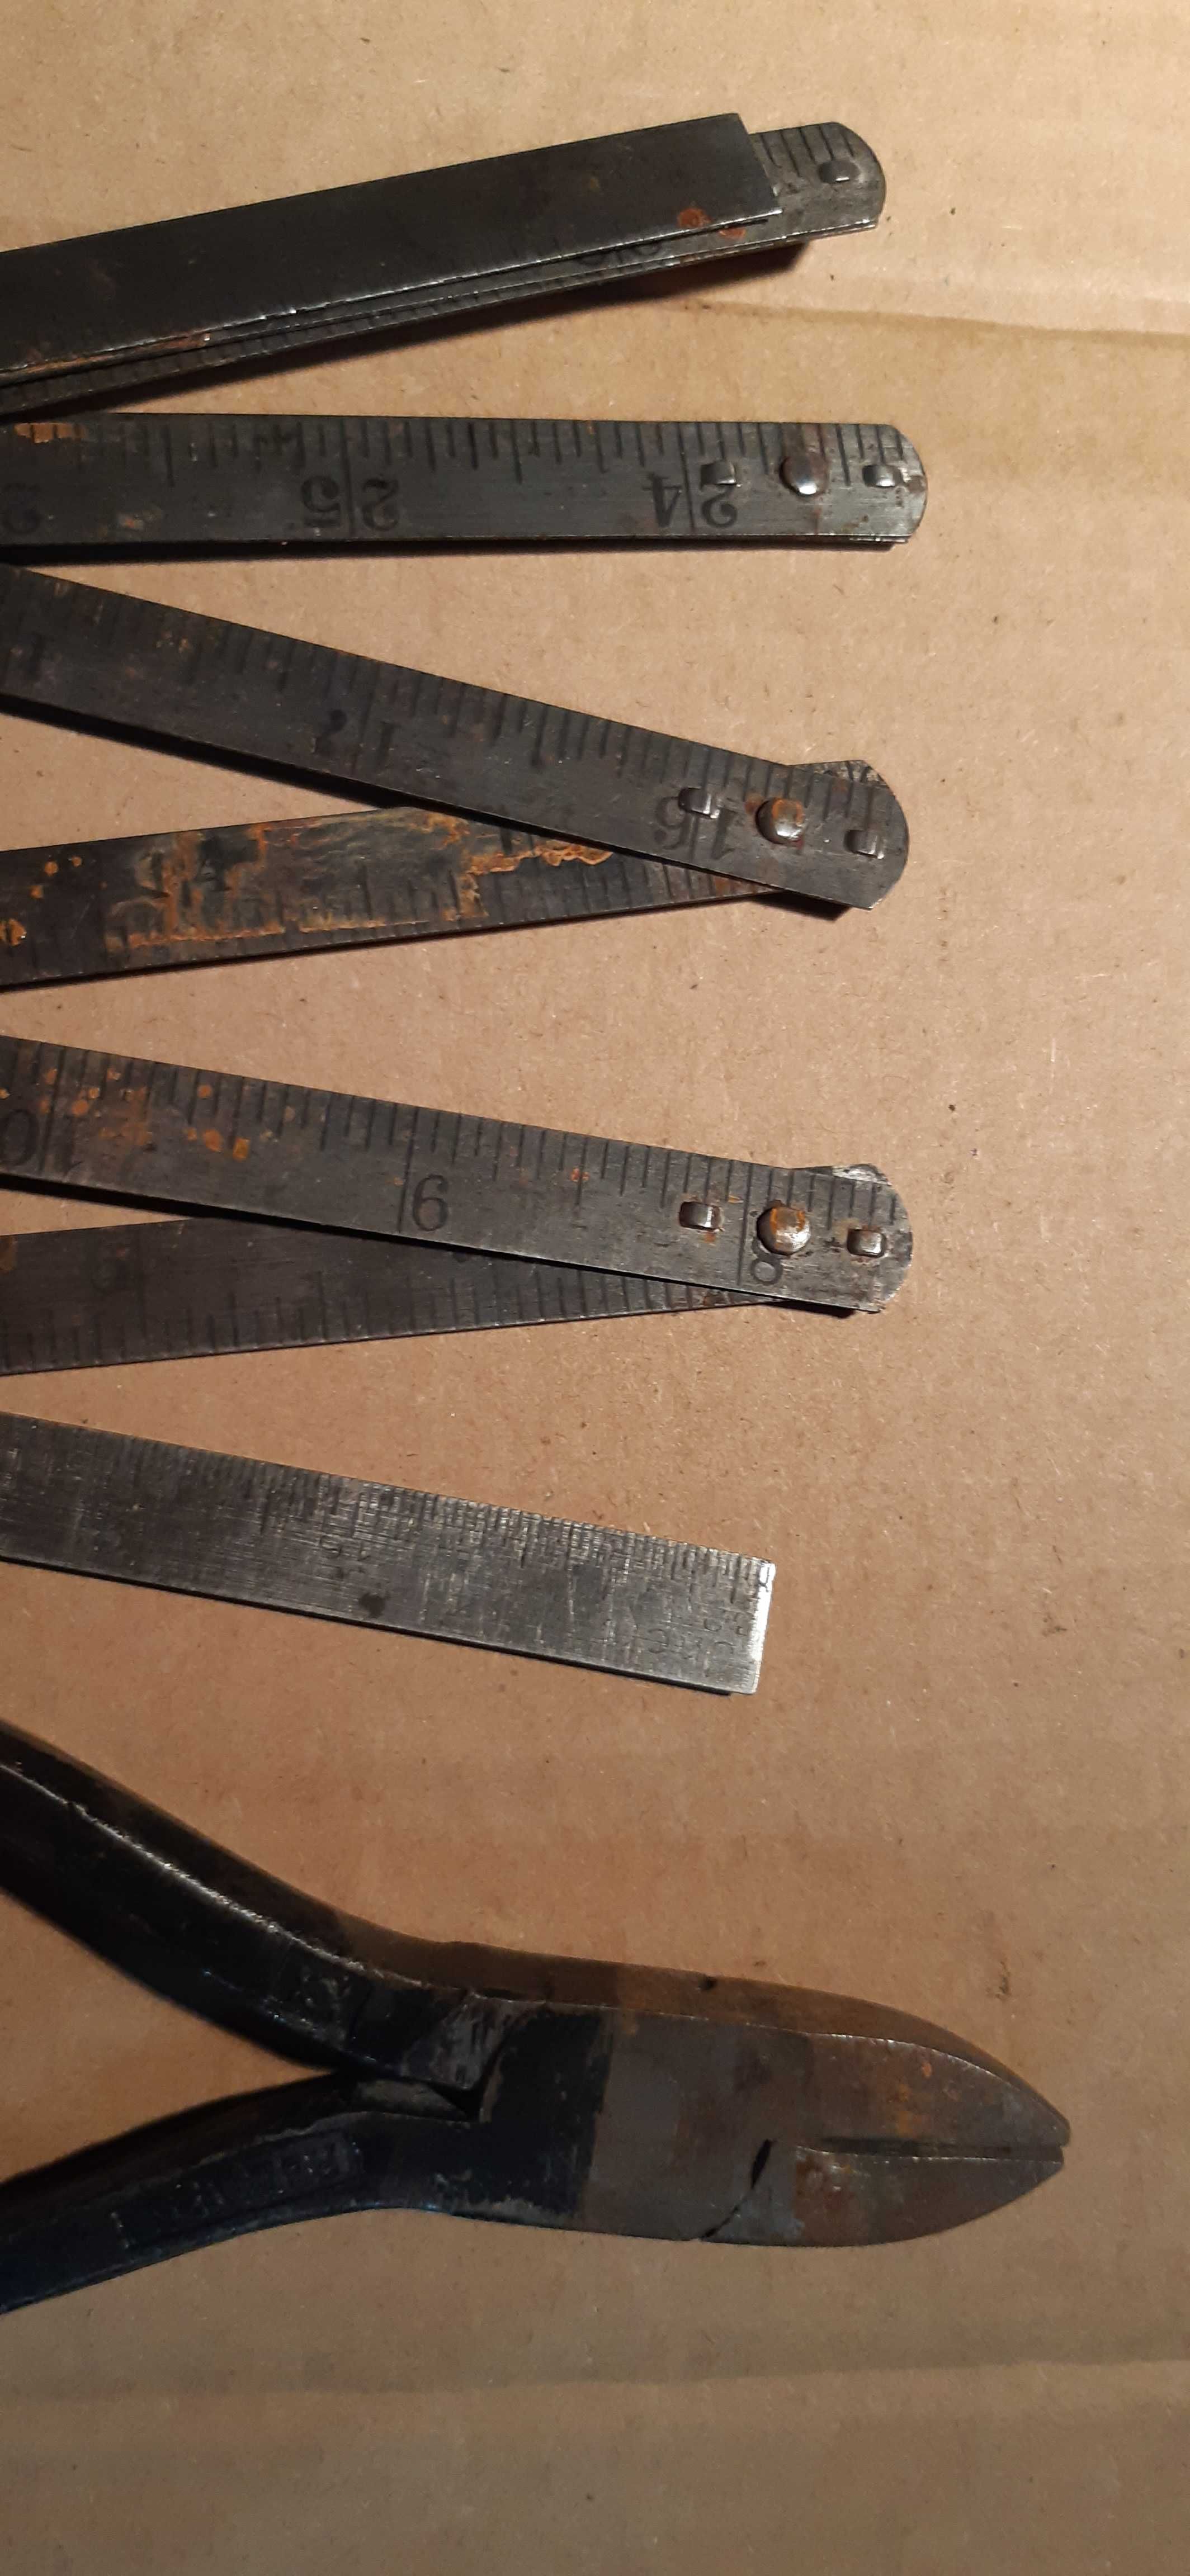 stare narzędzia, metalowy metr i kleszcze